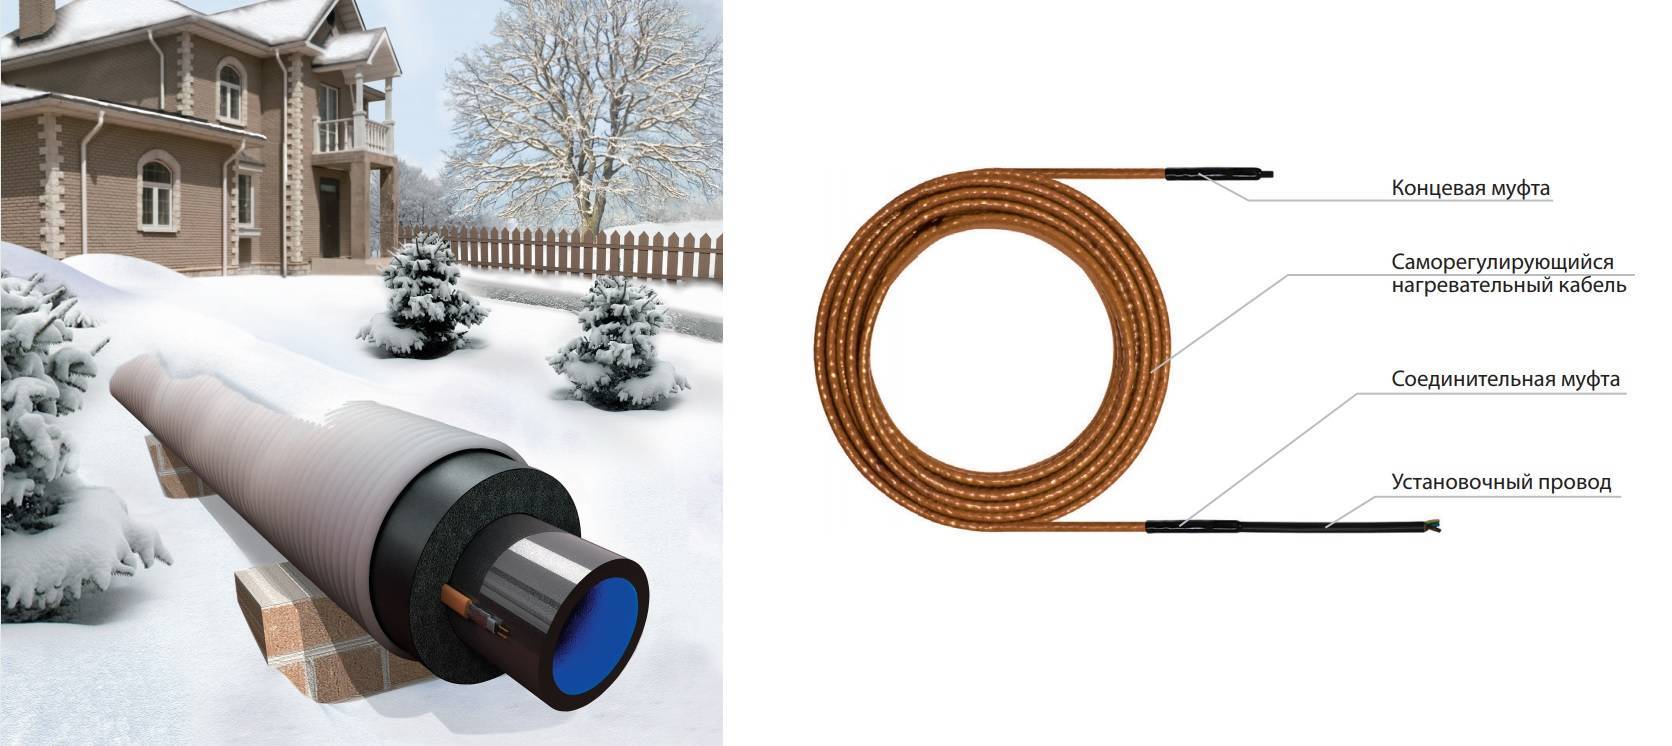 Как выбрать и установить греющий кабель для водопровода